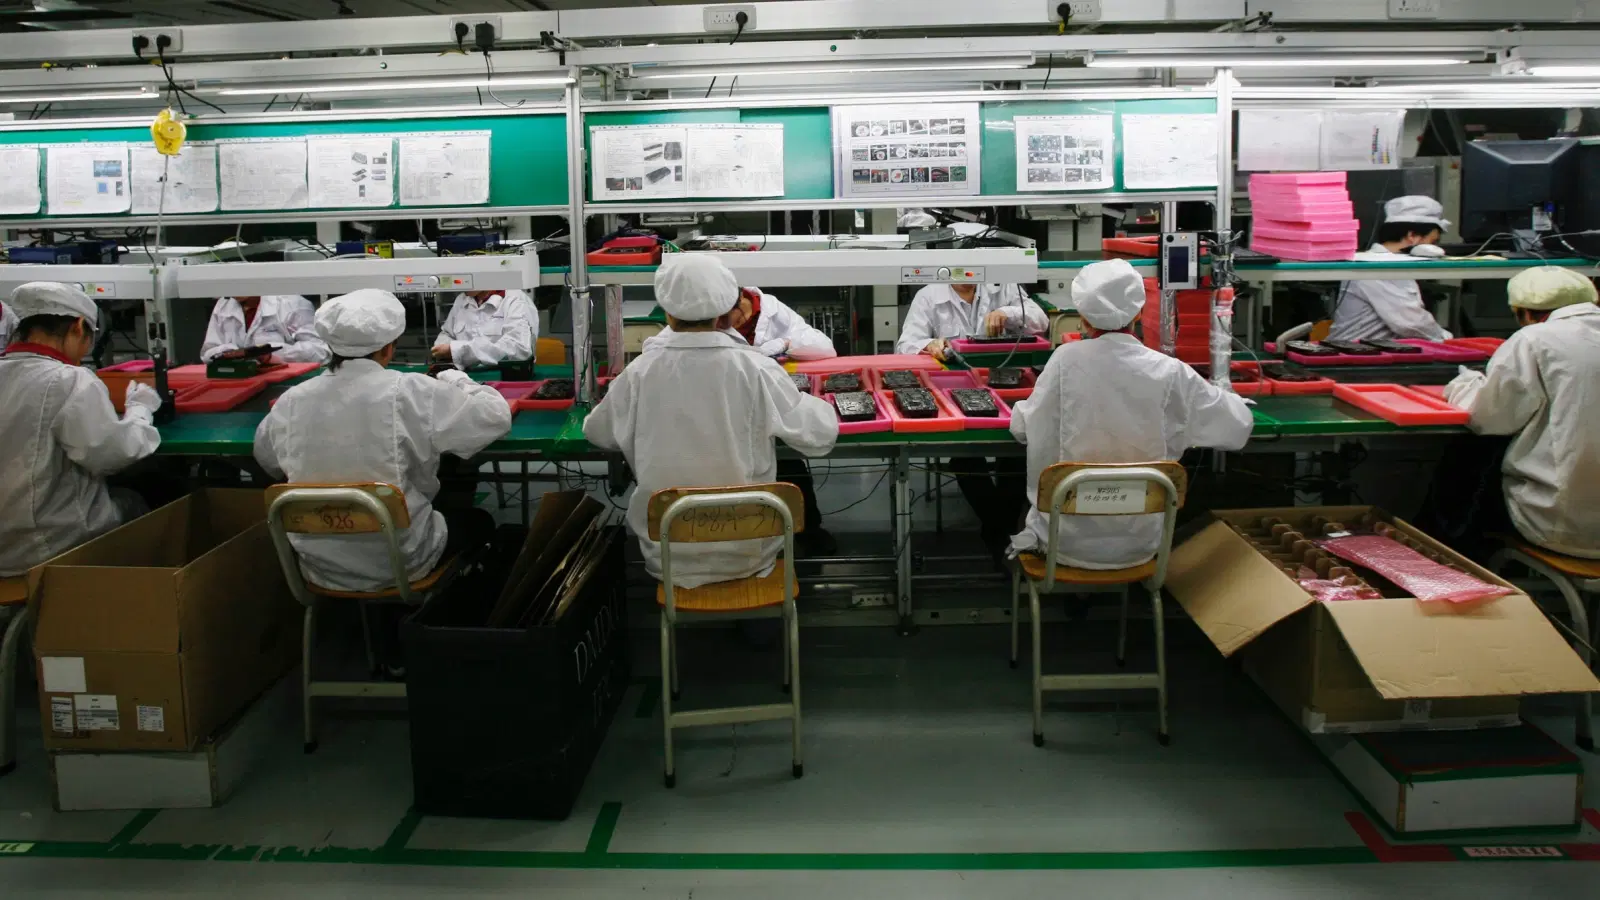 ΜΜΕ των ΗΠΑ: Η παγκόσμια ζήτηση για κινεζικά προϊόντα αυξήθηκε με ταχείς ρυθμούς και τα εργοστάσια αντιμετώπισαν «πόνο τοκετού»